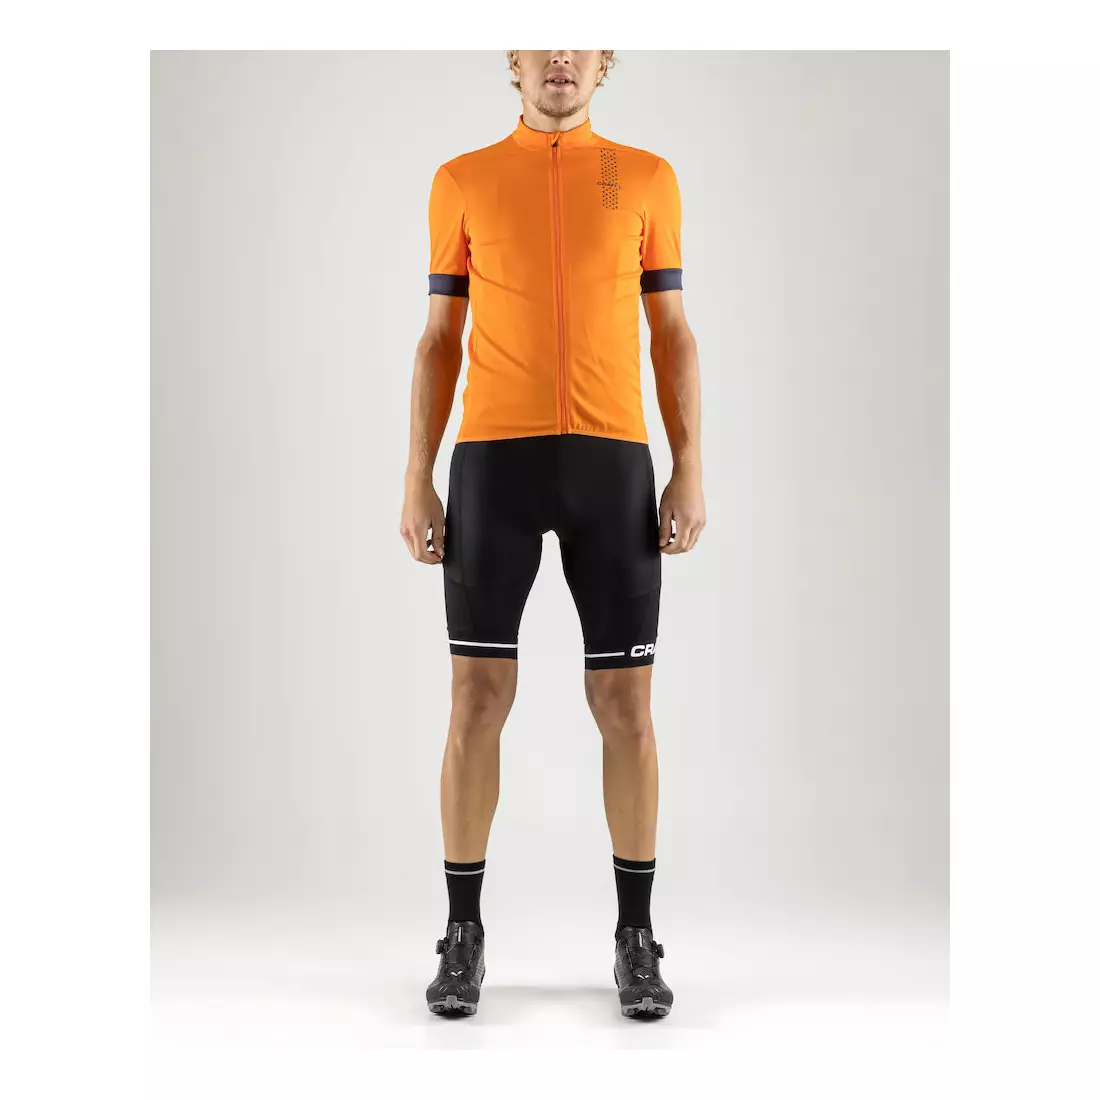 CRAFT RISE men's cycling jersey orange 1906097-575947